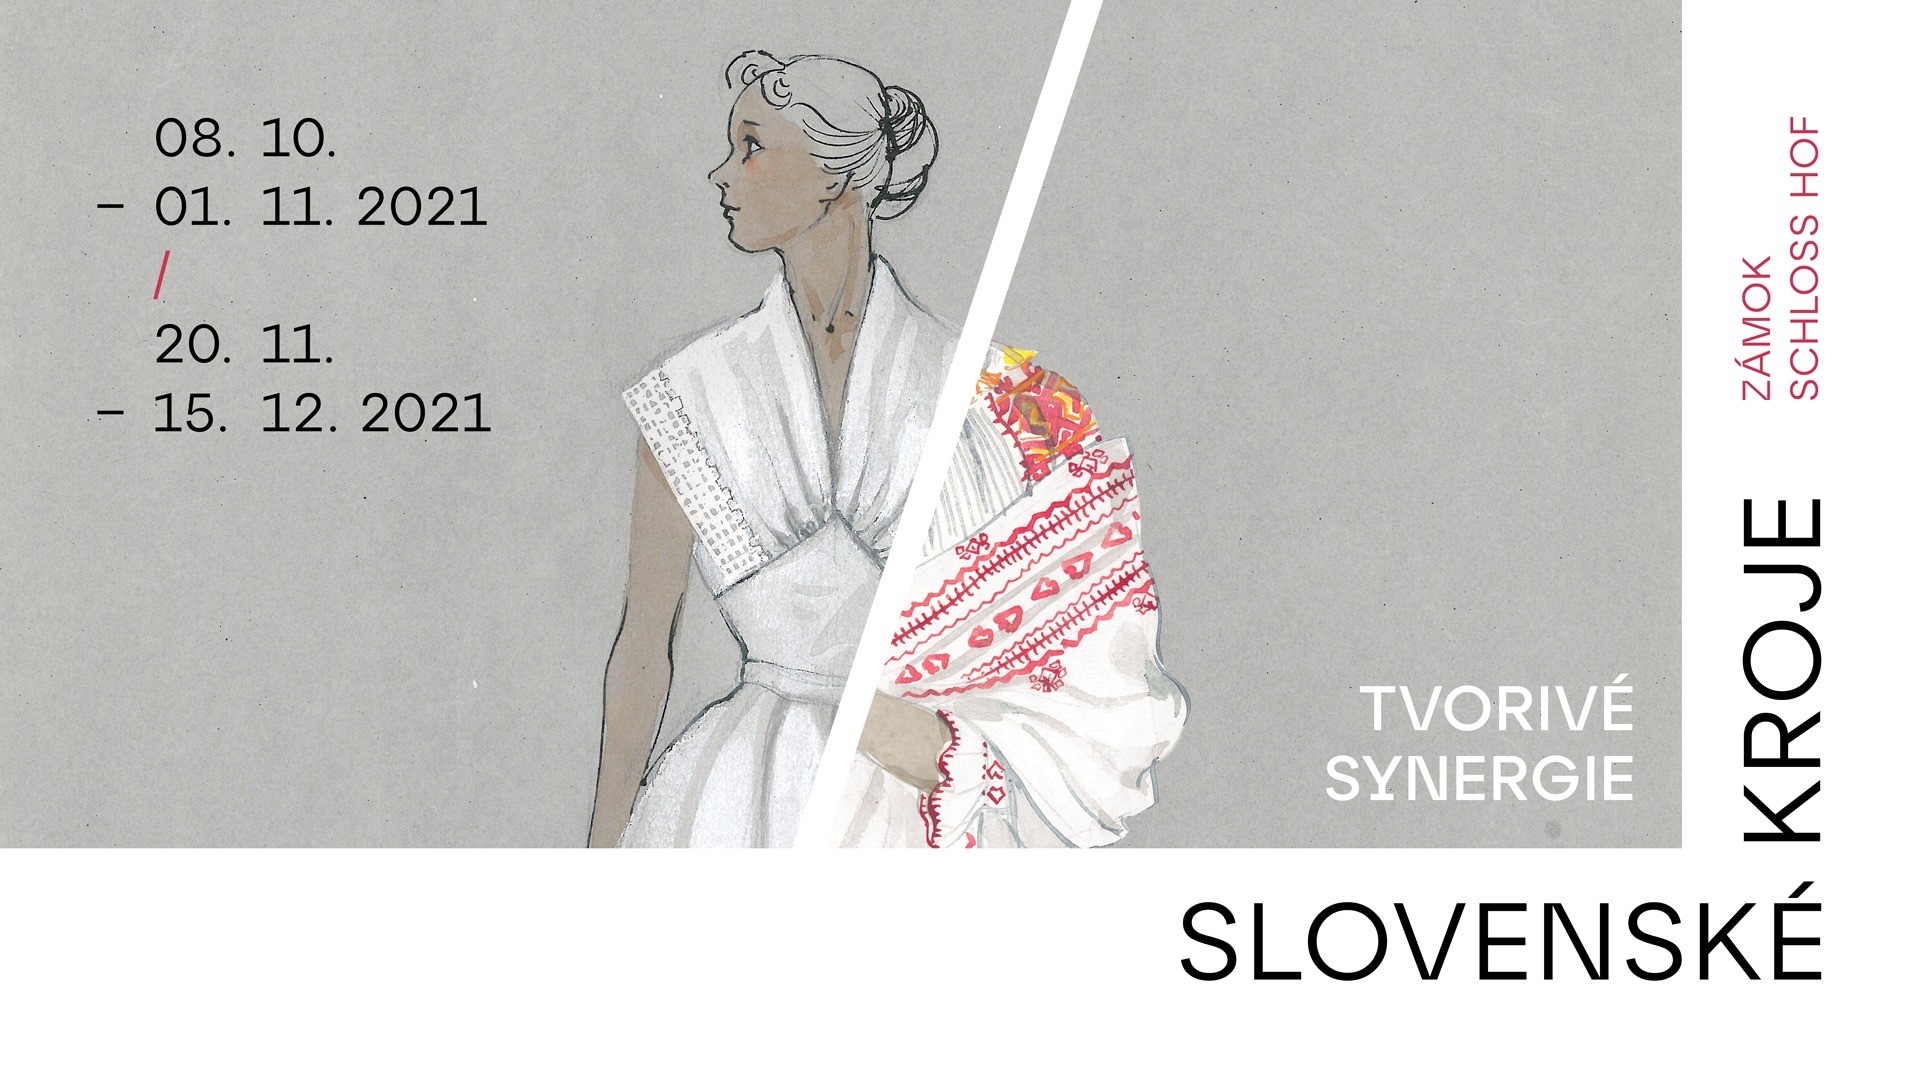 NOV - - - Slovensk kroje  tvoriv synergie / Slowakische Trachten  Kreative Synergien 2021 Schloss Hof - vstava